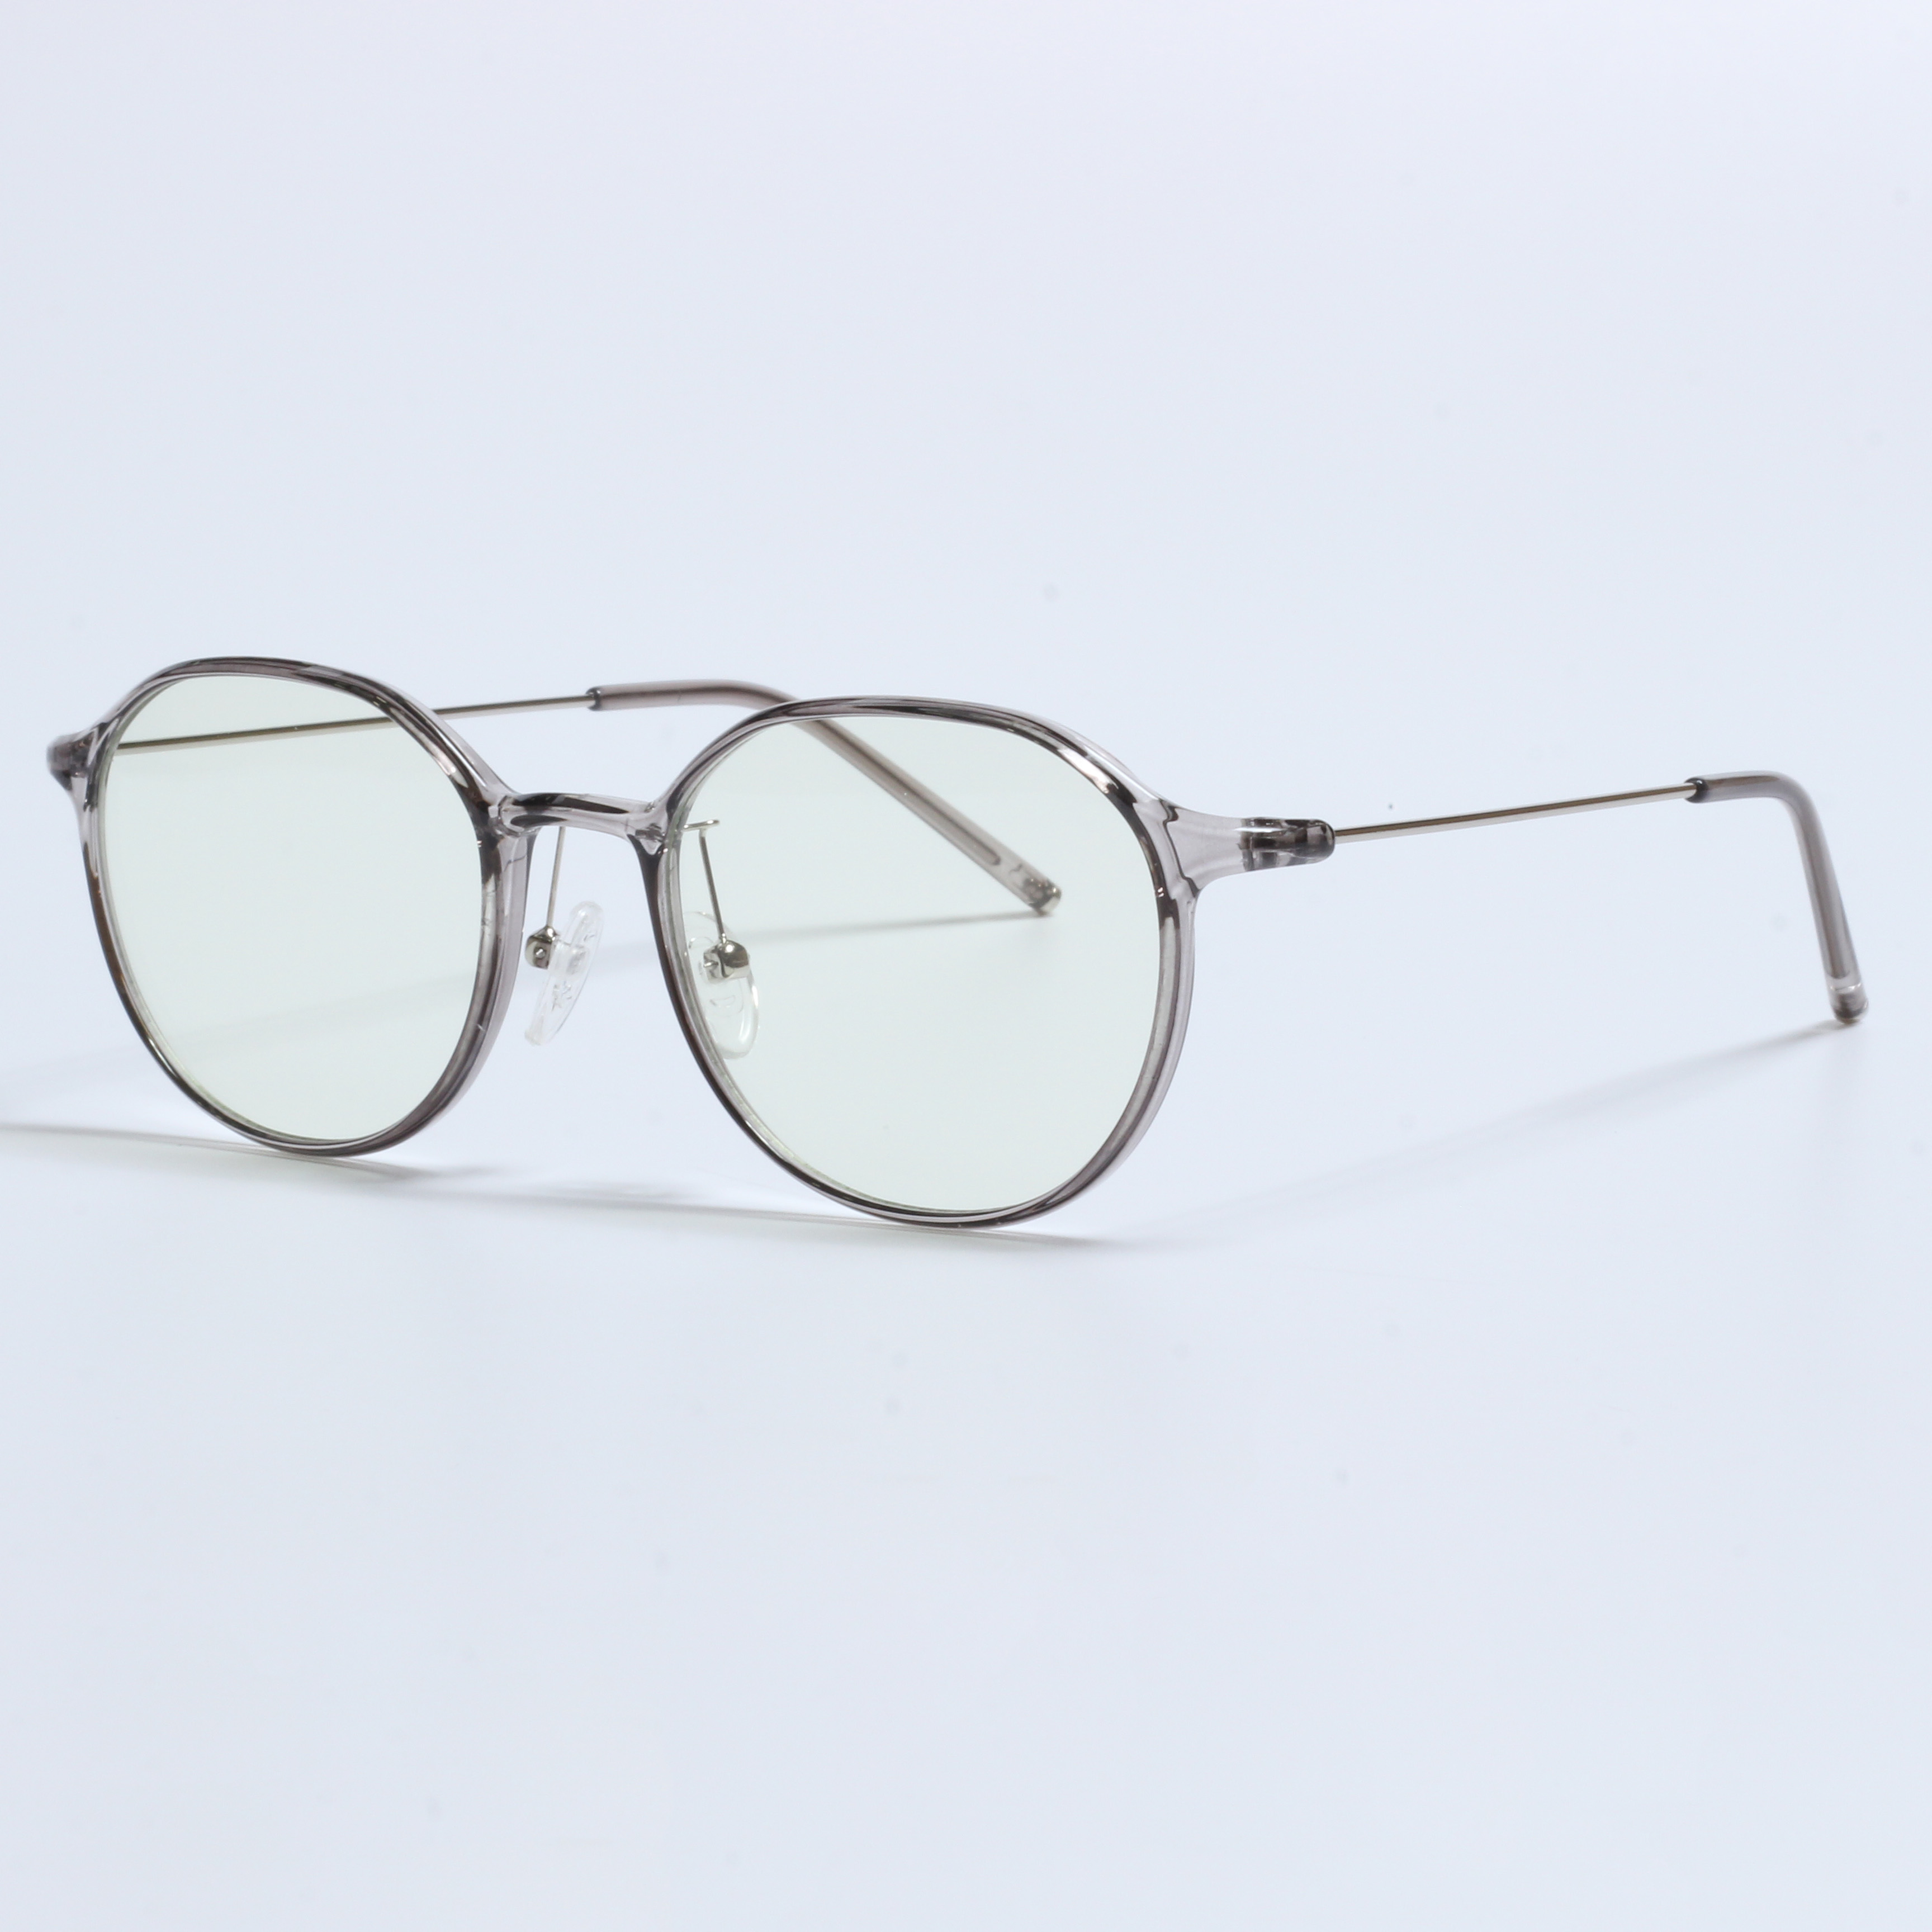 Vintage Thick Gafas Opticas De Hombres Transparent TR90 Frames (5)